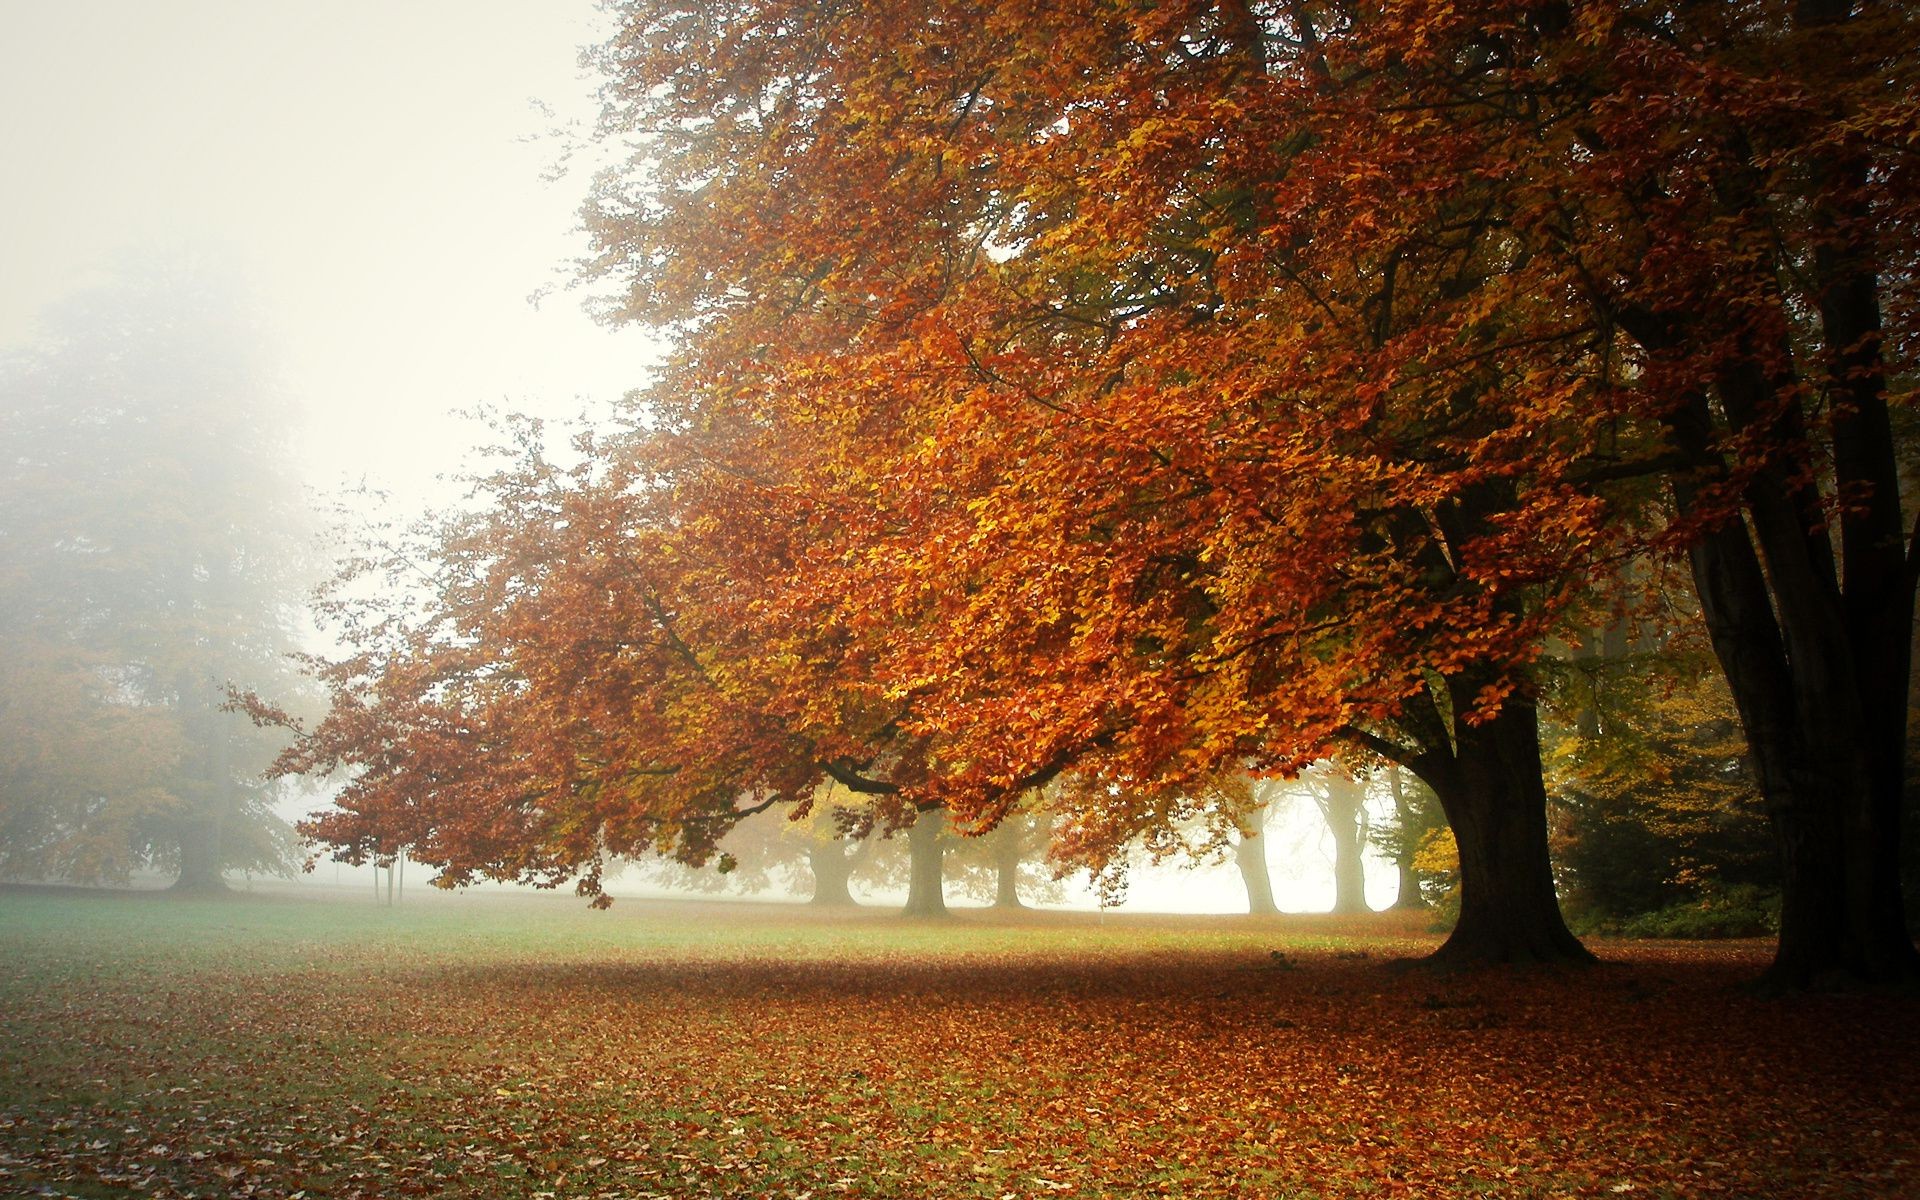 осень осень дерево лист туман туман древесины пейзаж рассвет парк природа сезон филиал кленовый солнце хорошую погоду яркий сельской местности на открытом воздухе дымка